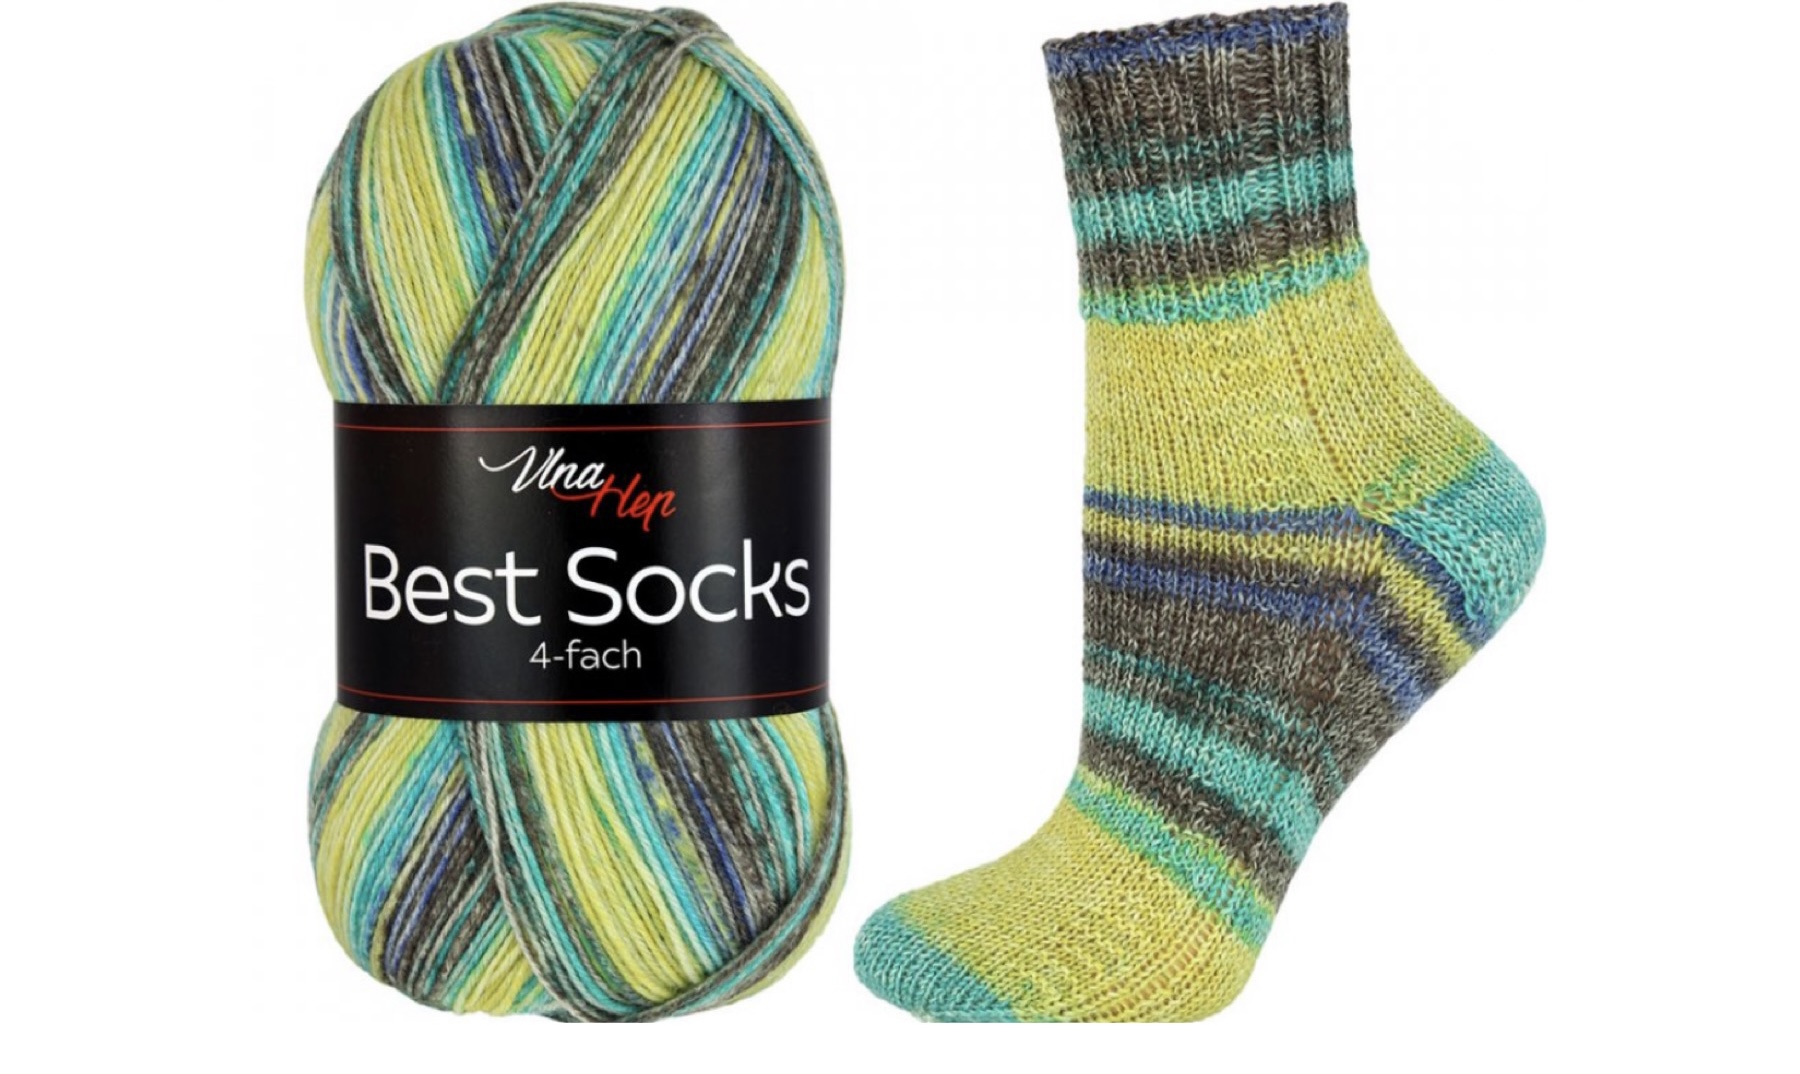 Příze Best Socks 4-fach 7320